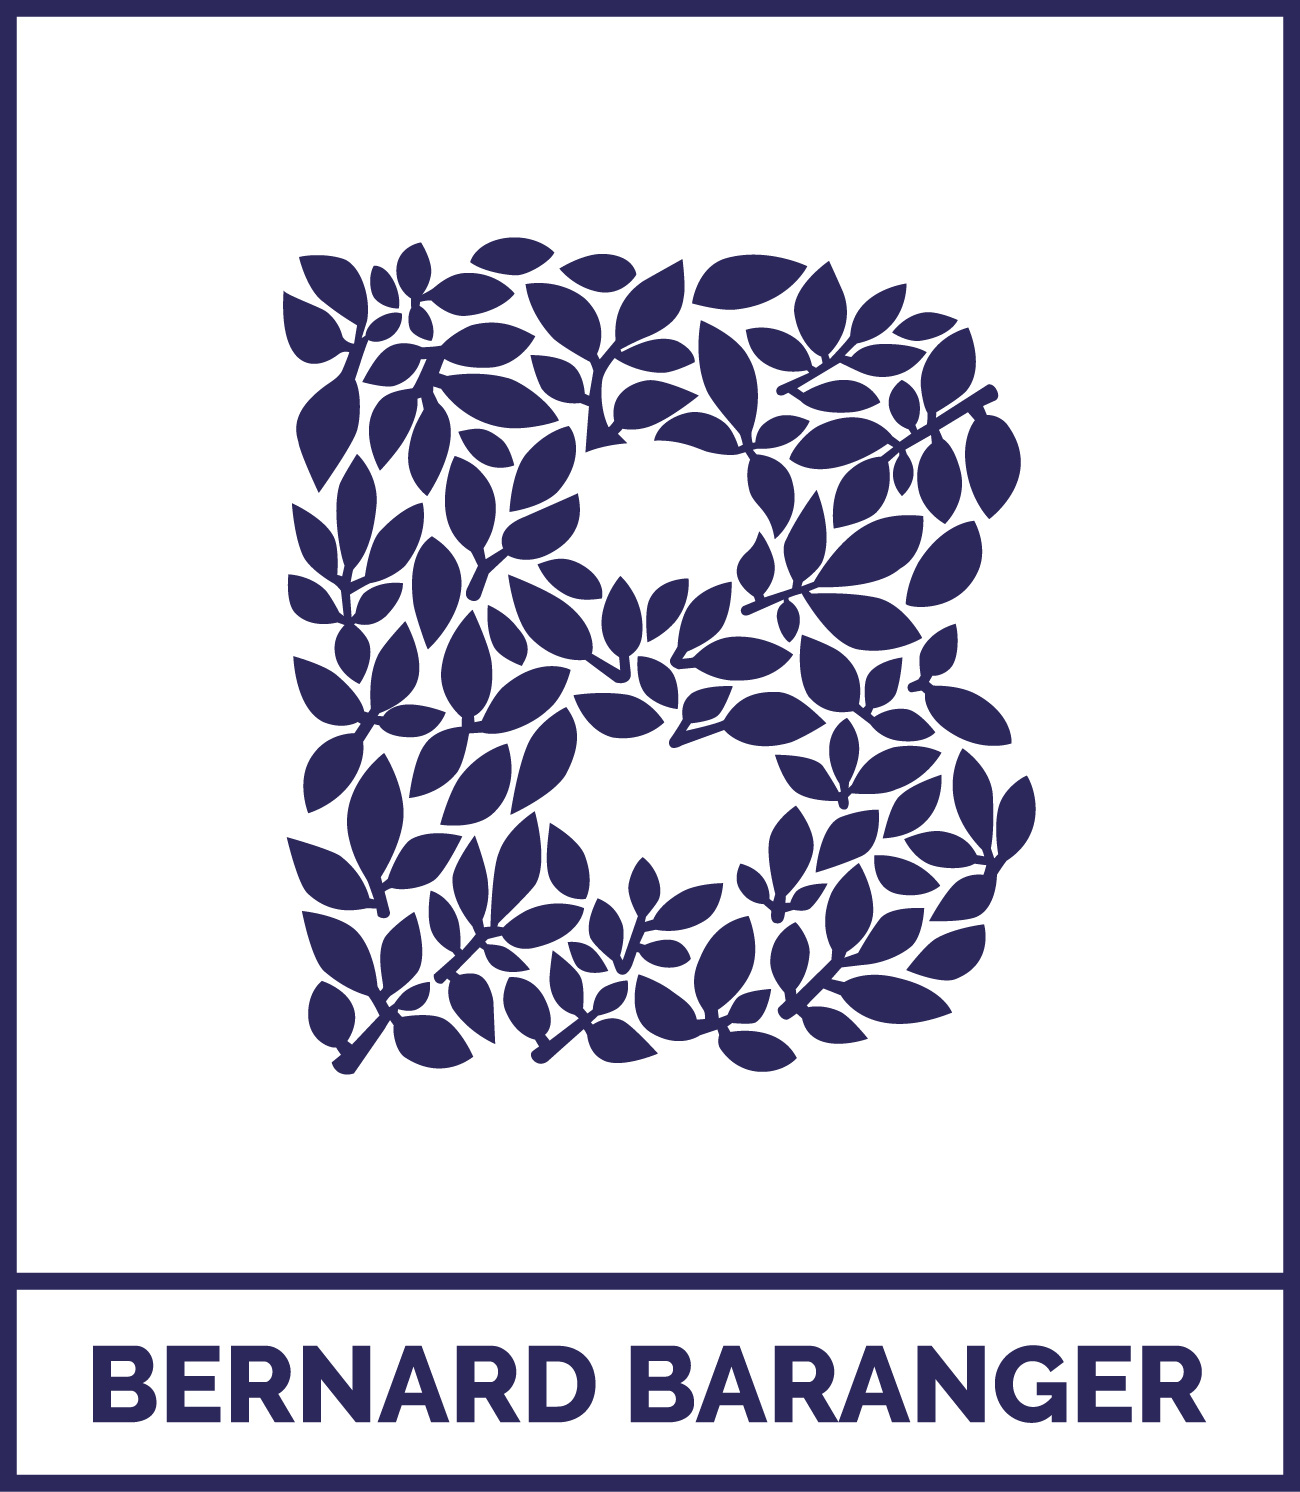 BERNARD BARANGER